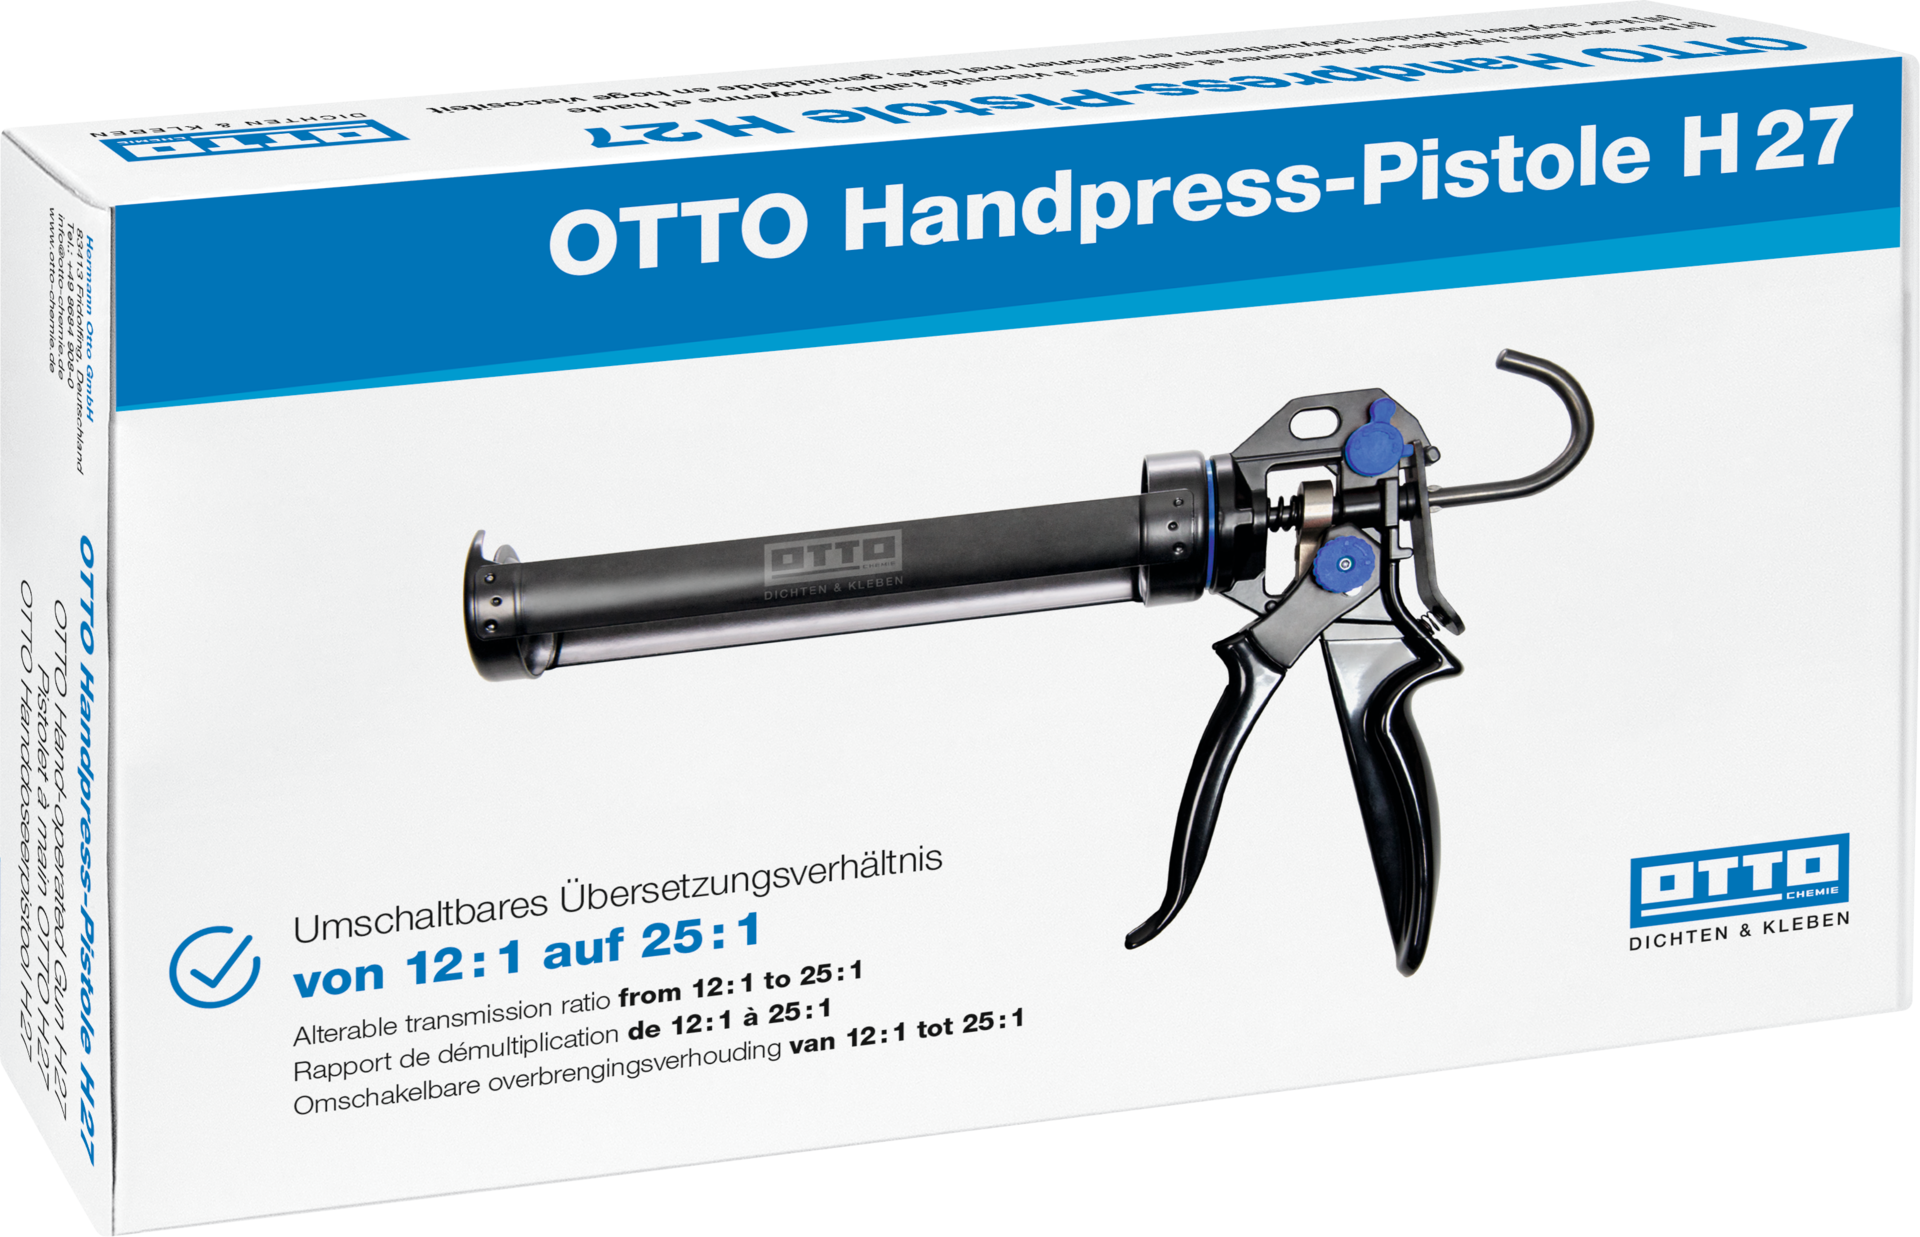 OTTO Handpress-Pistole H 27